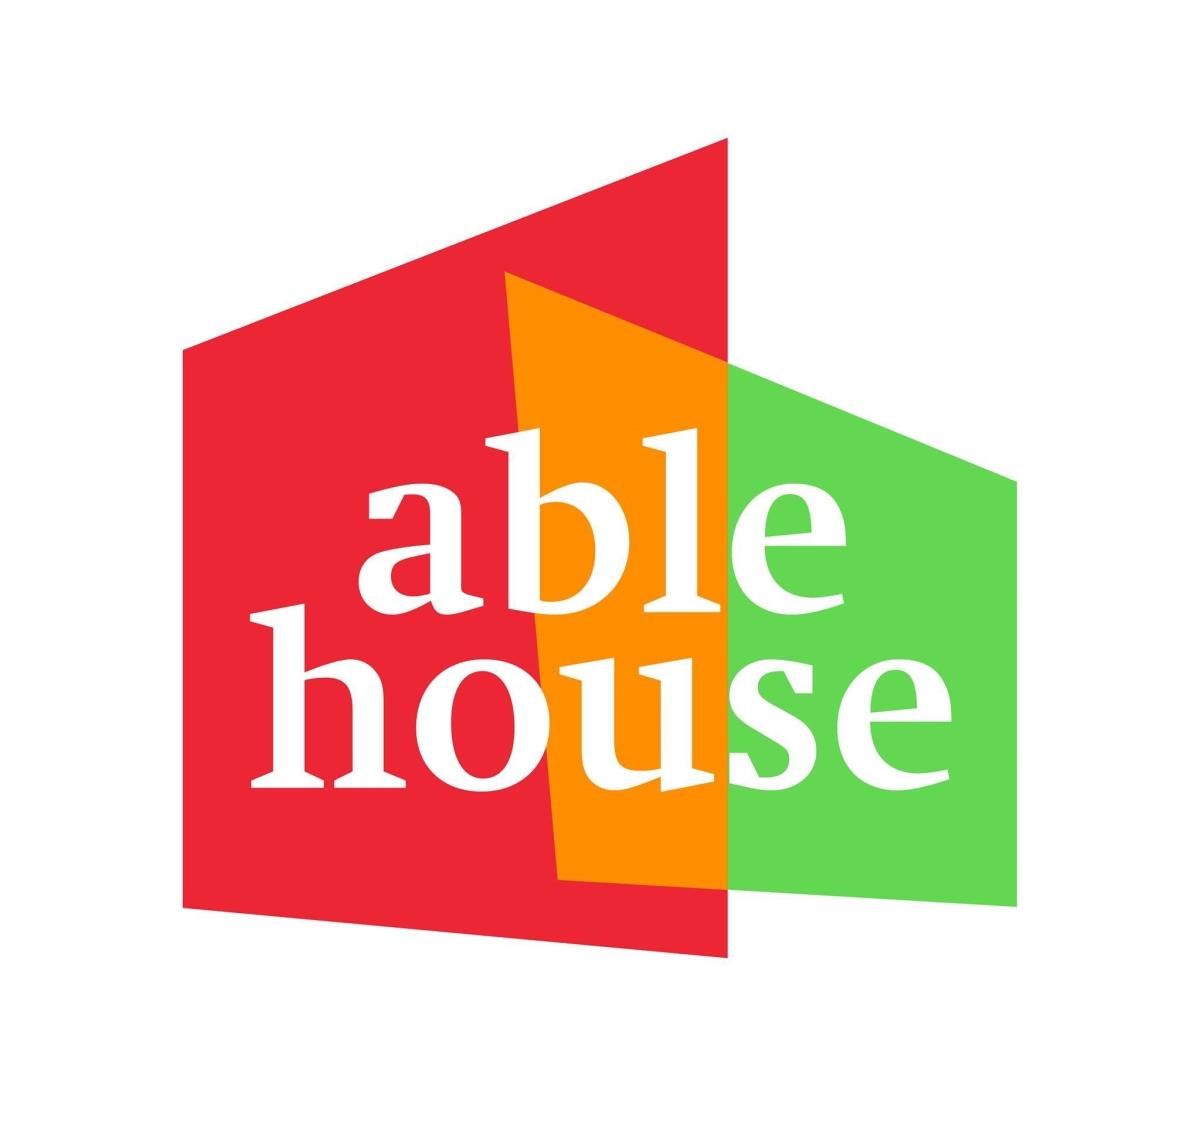 Able house logo